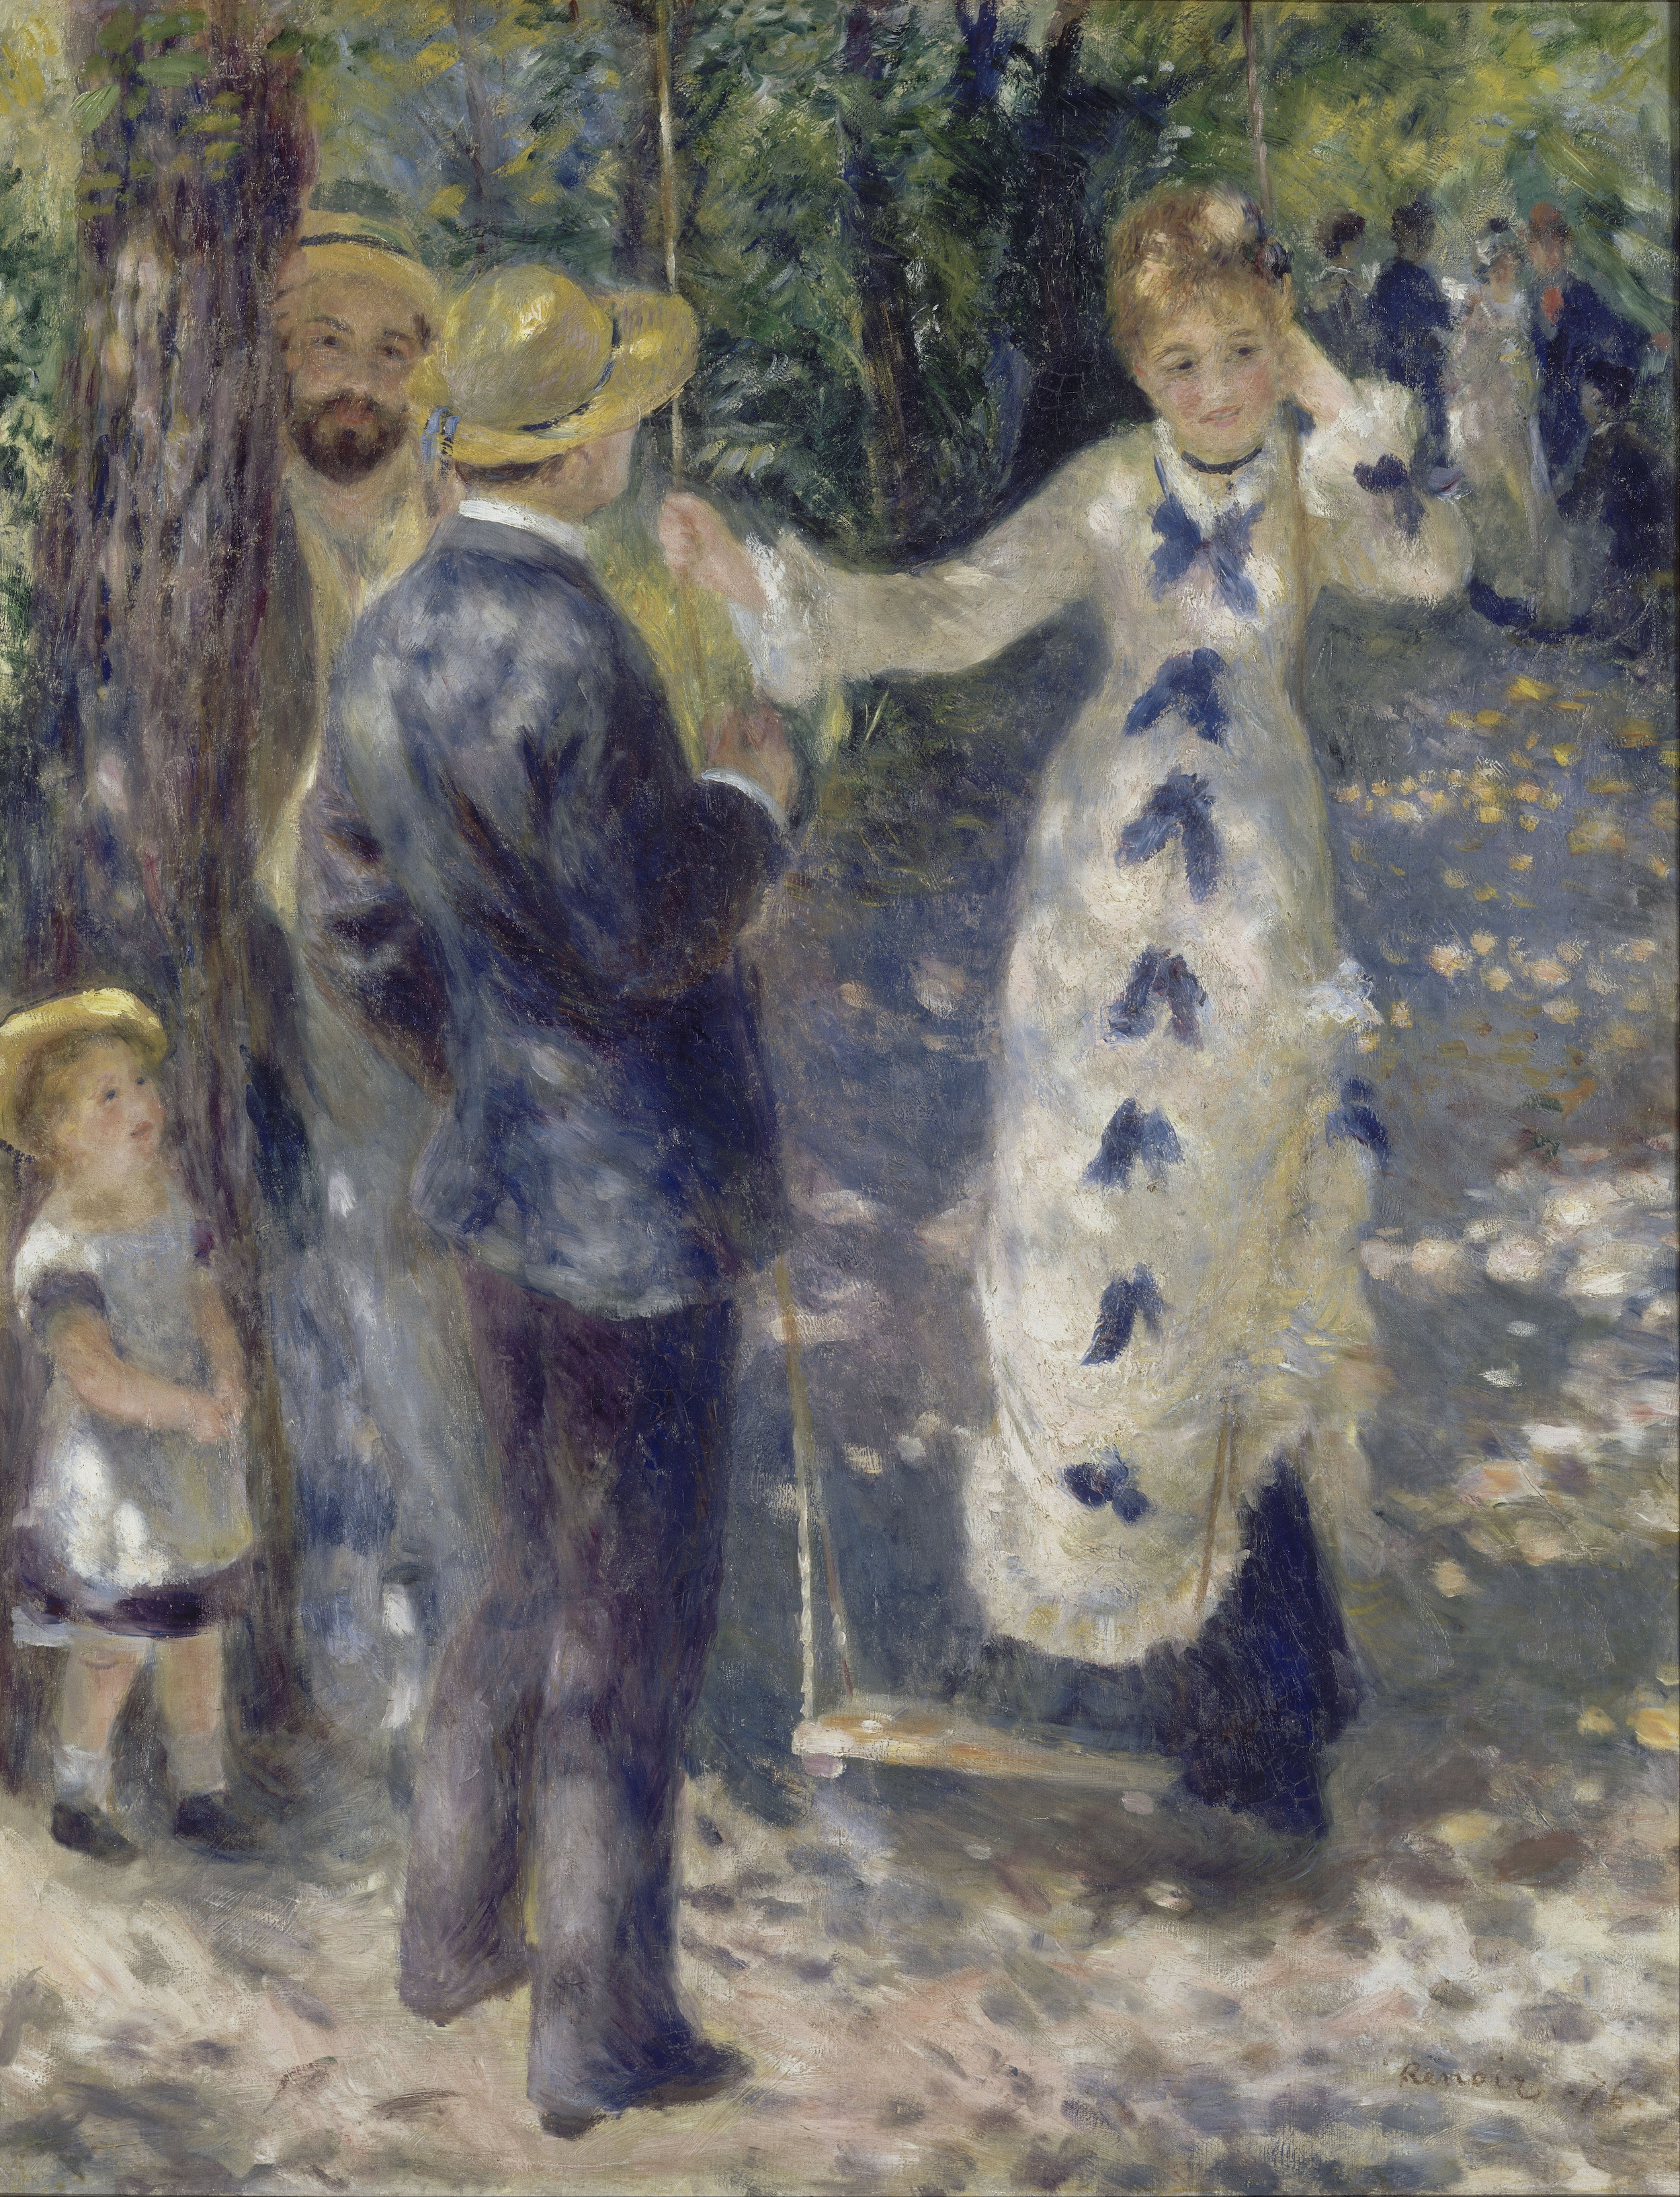 Auf der Schaukel by Pierre-Auguste Renoir - 1876 - 92 x 73 cm Musée d'Orsay